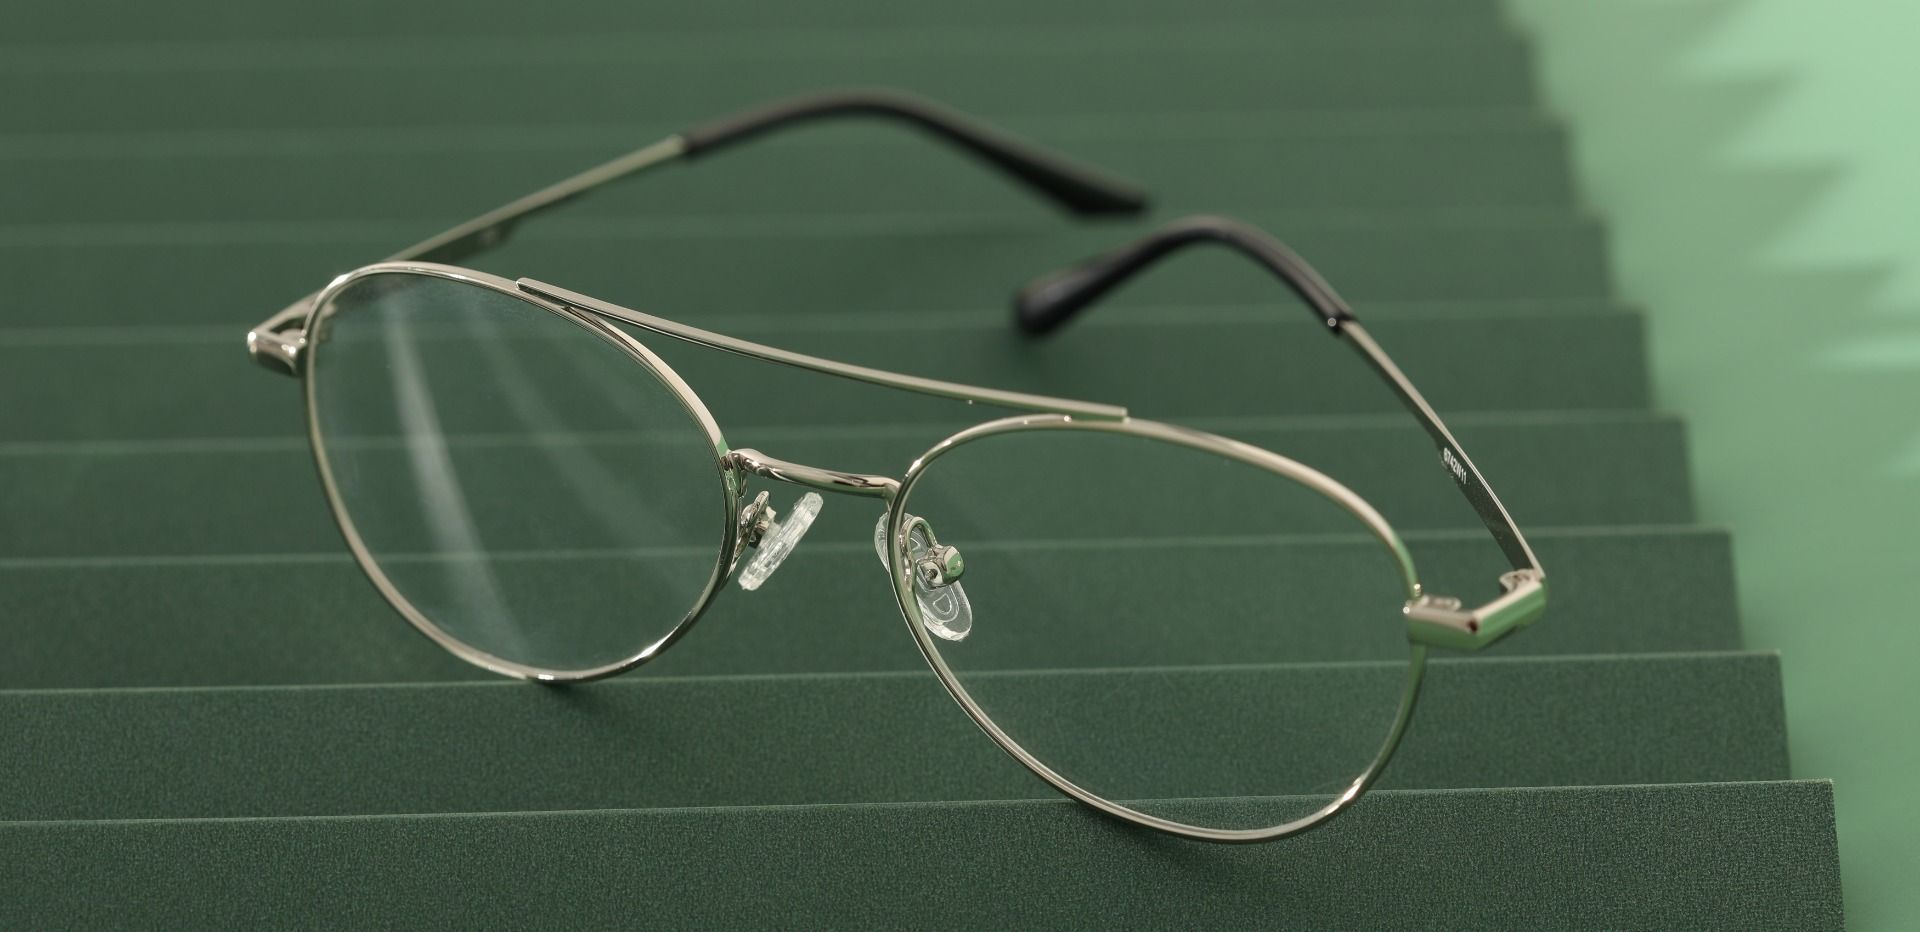 Hinton Aviator Prescription Glasses - Silver